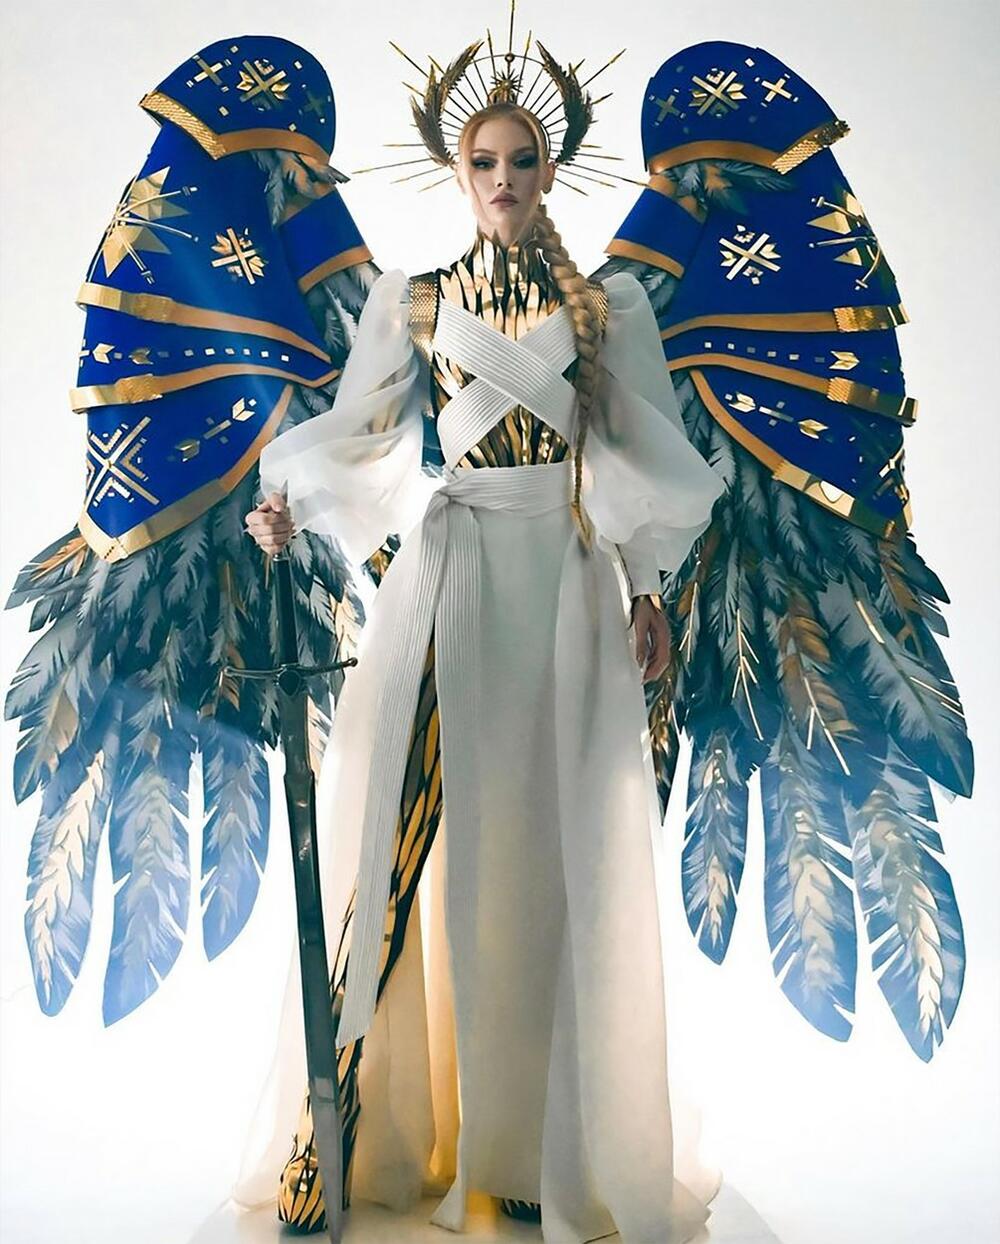 Mis Ukrajine imala je kostim kao arhangel Mihailo  